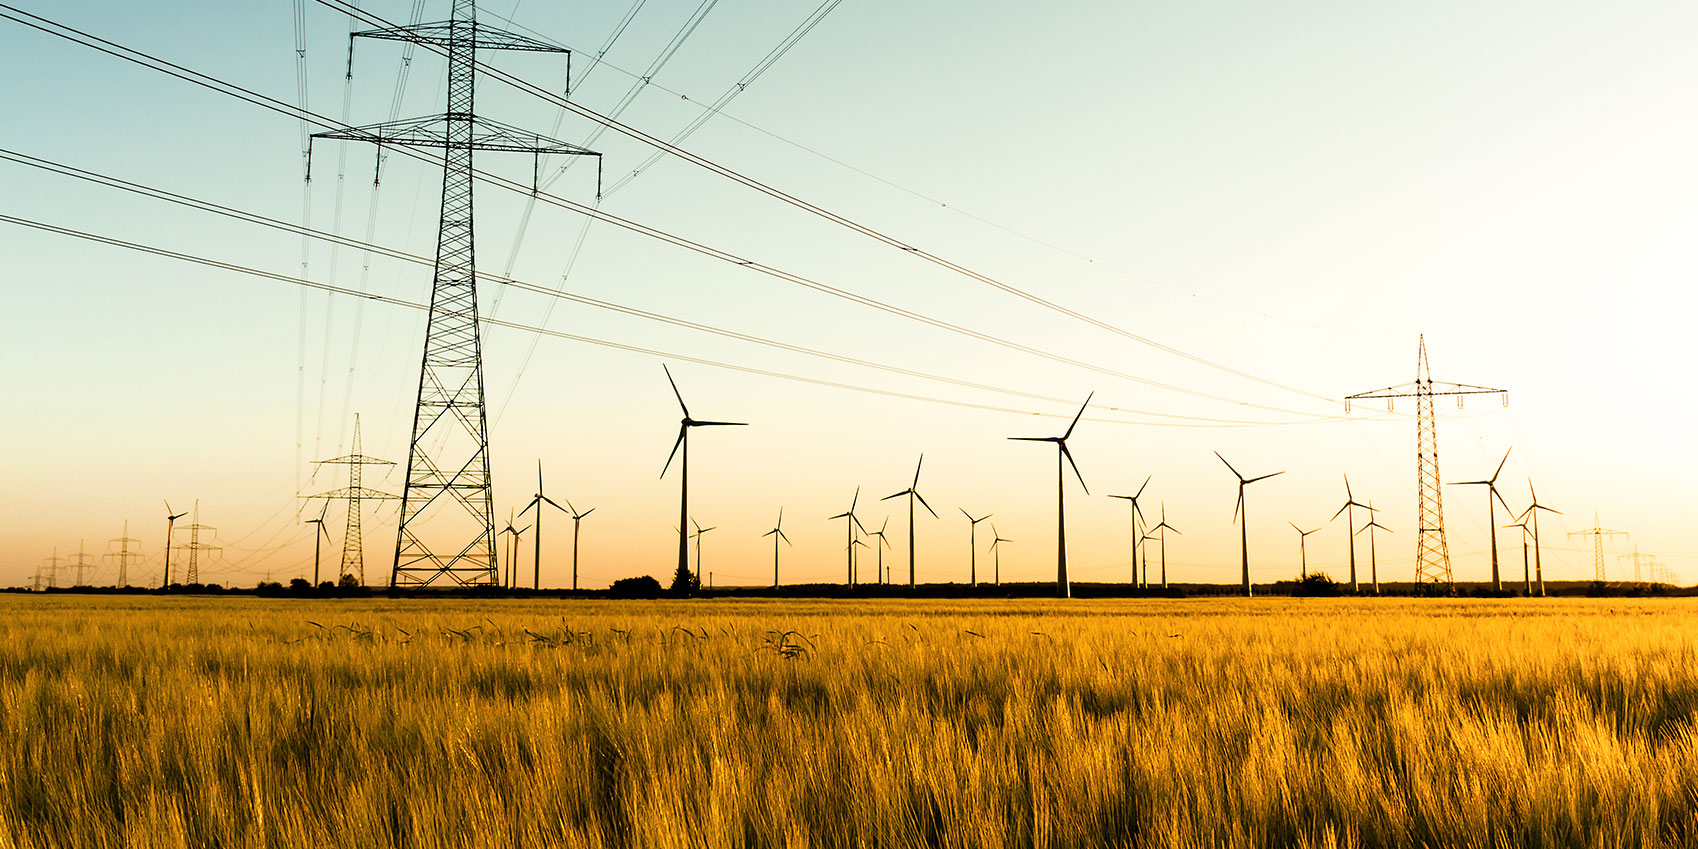 Strommasten, Feld und Windräder stehen für die Erzeugung und Weitergabe von Energie und Strom